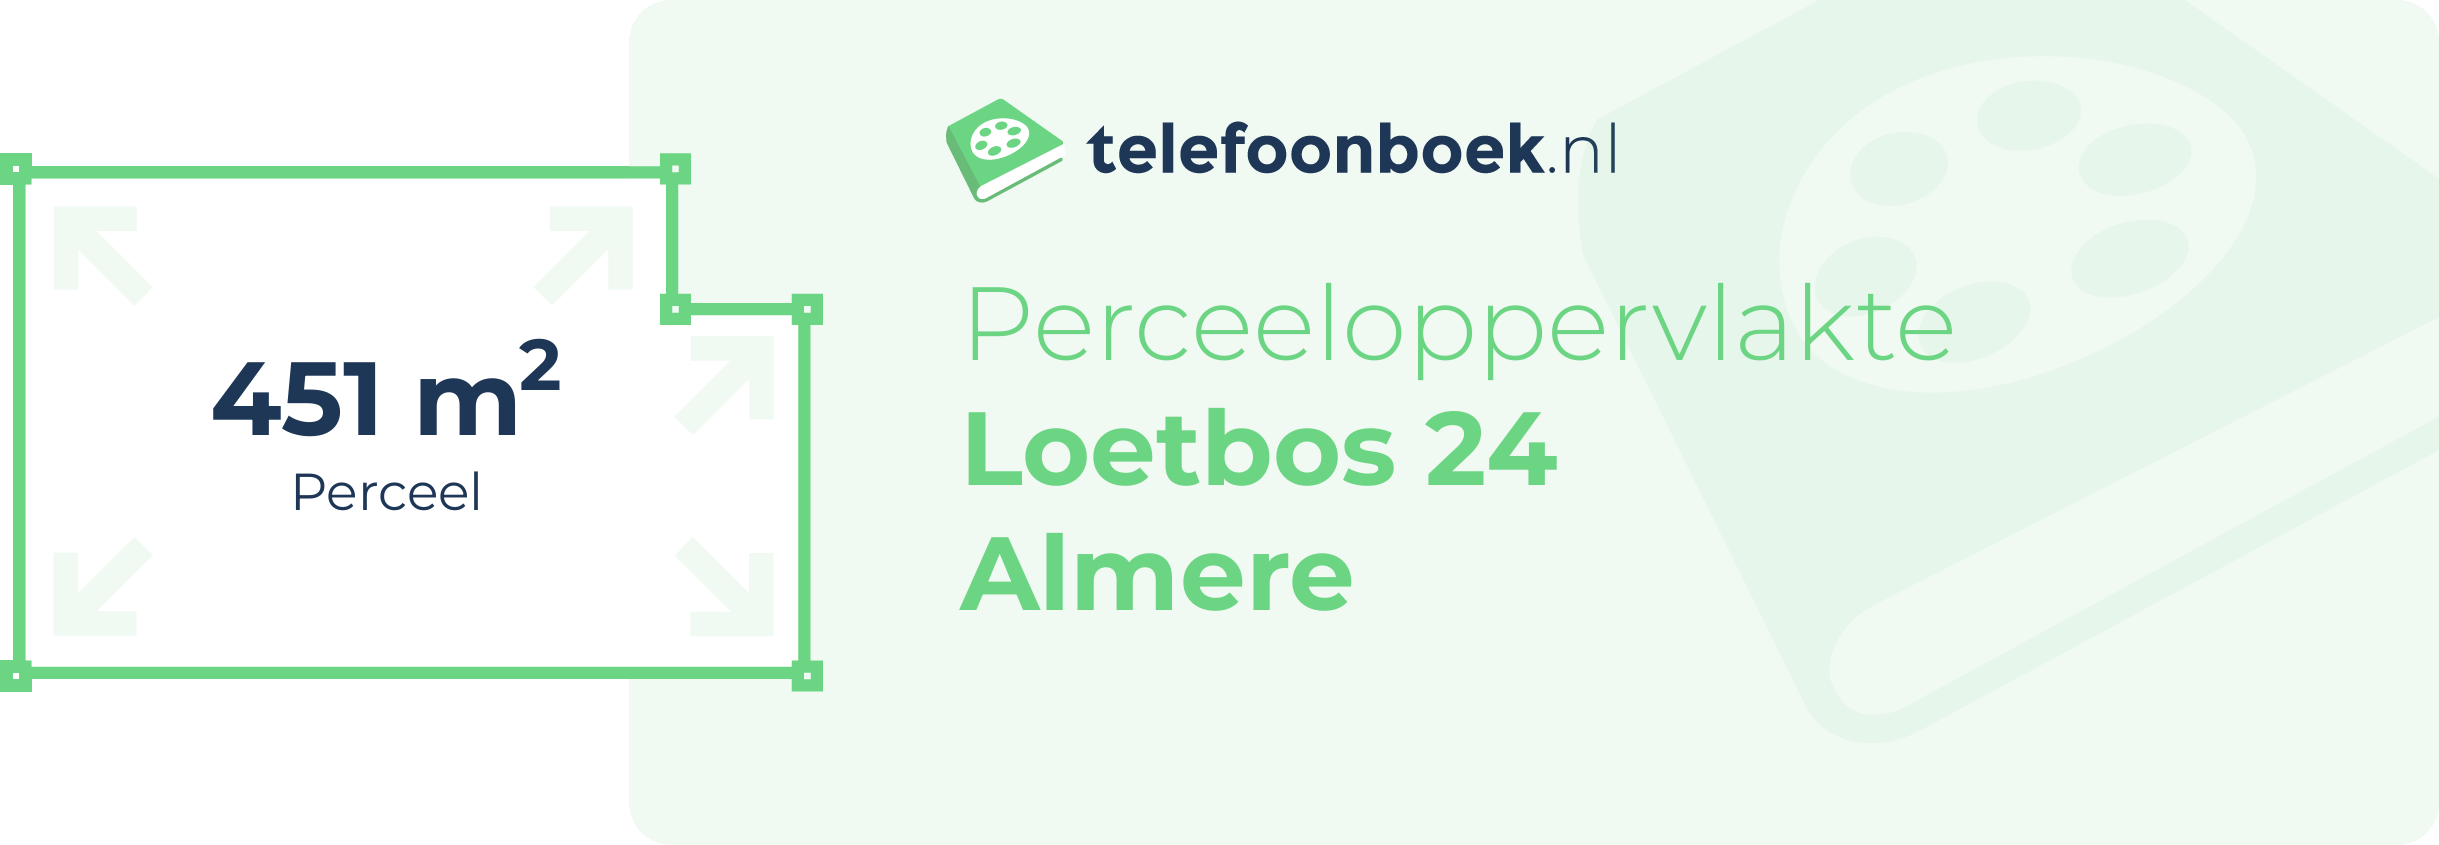 Perceeloppervlakte Loetbos 24 Almere